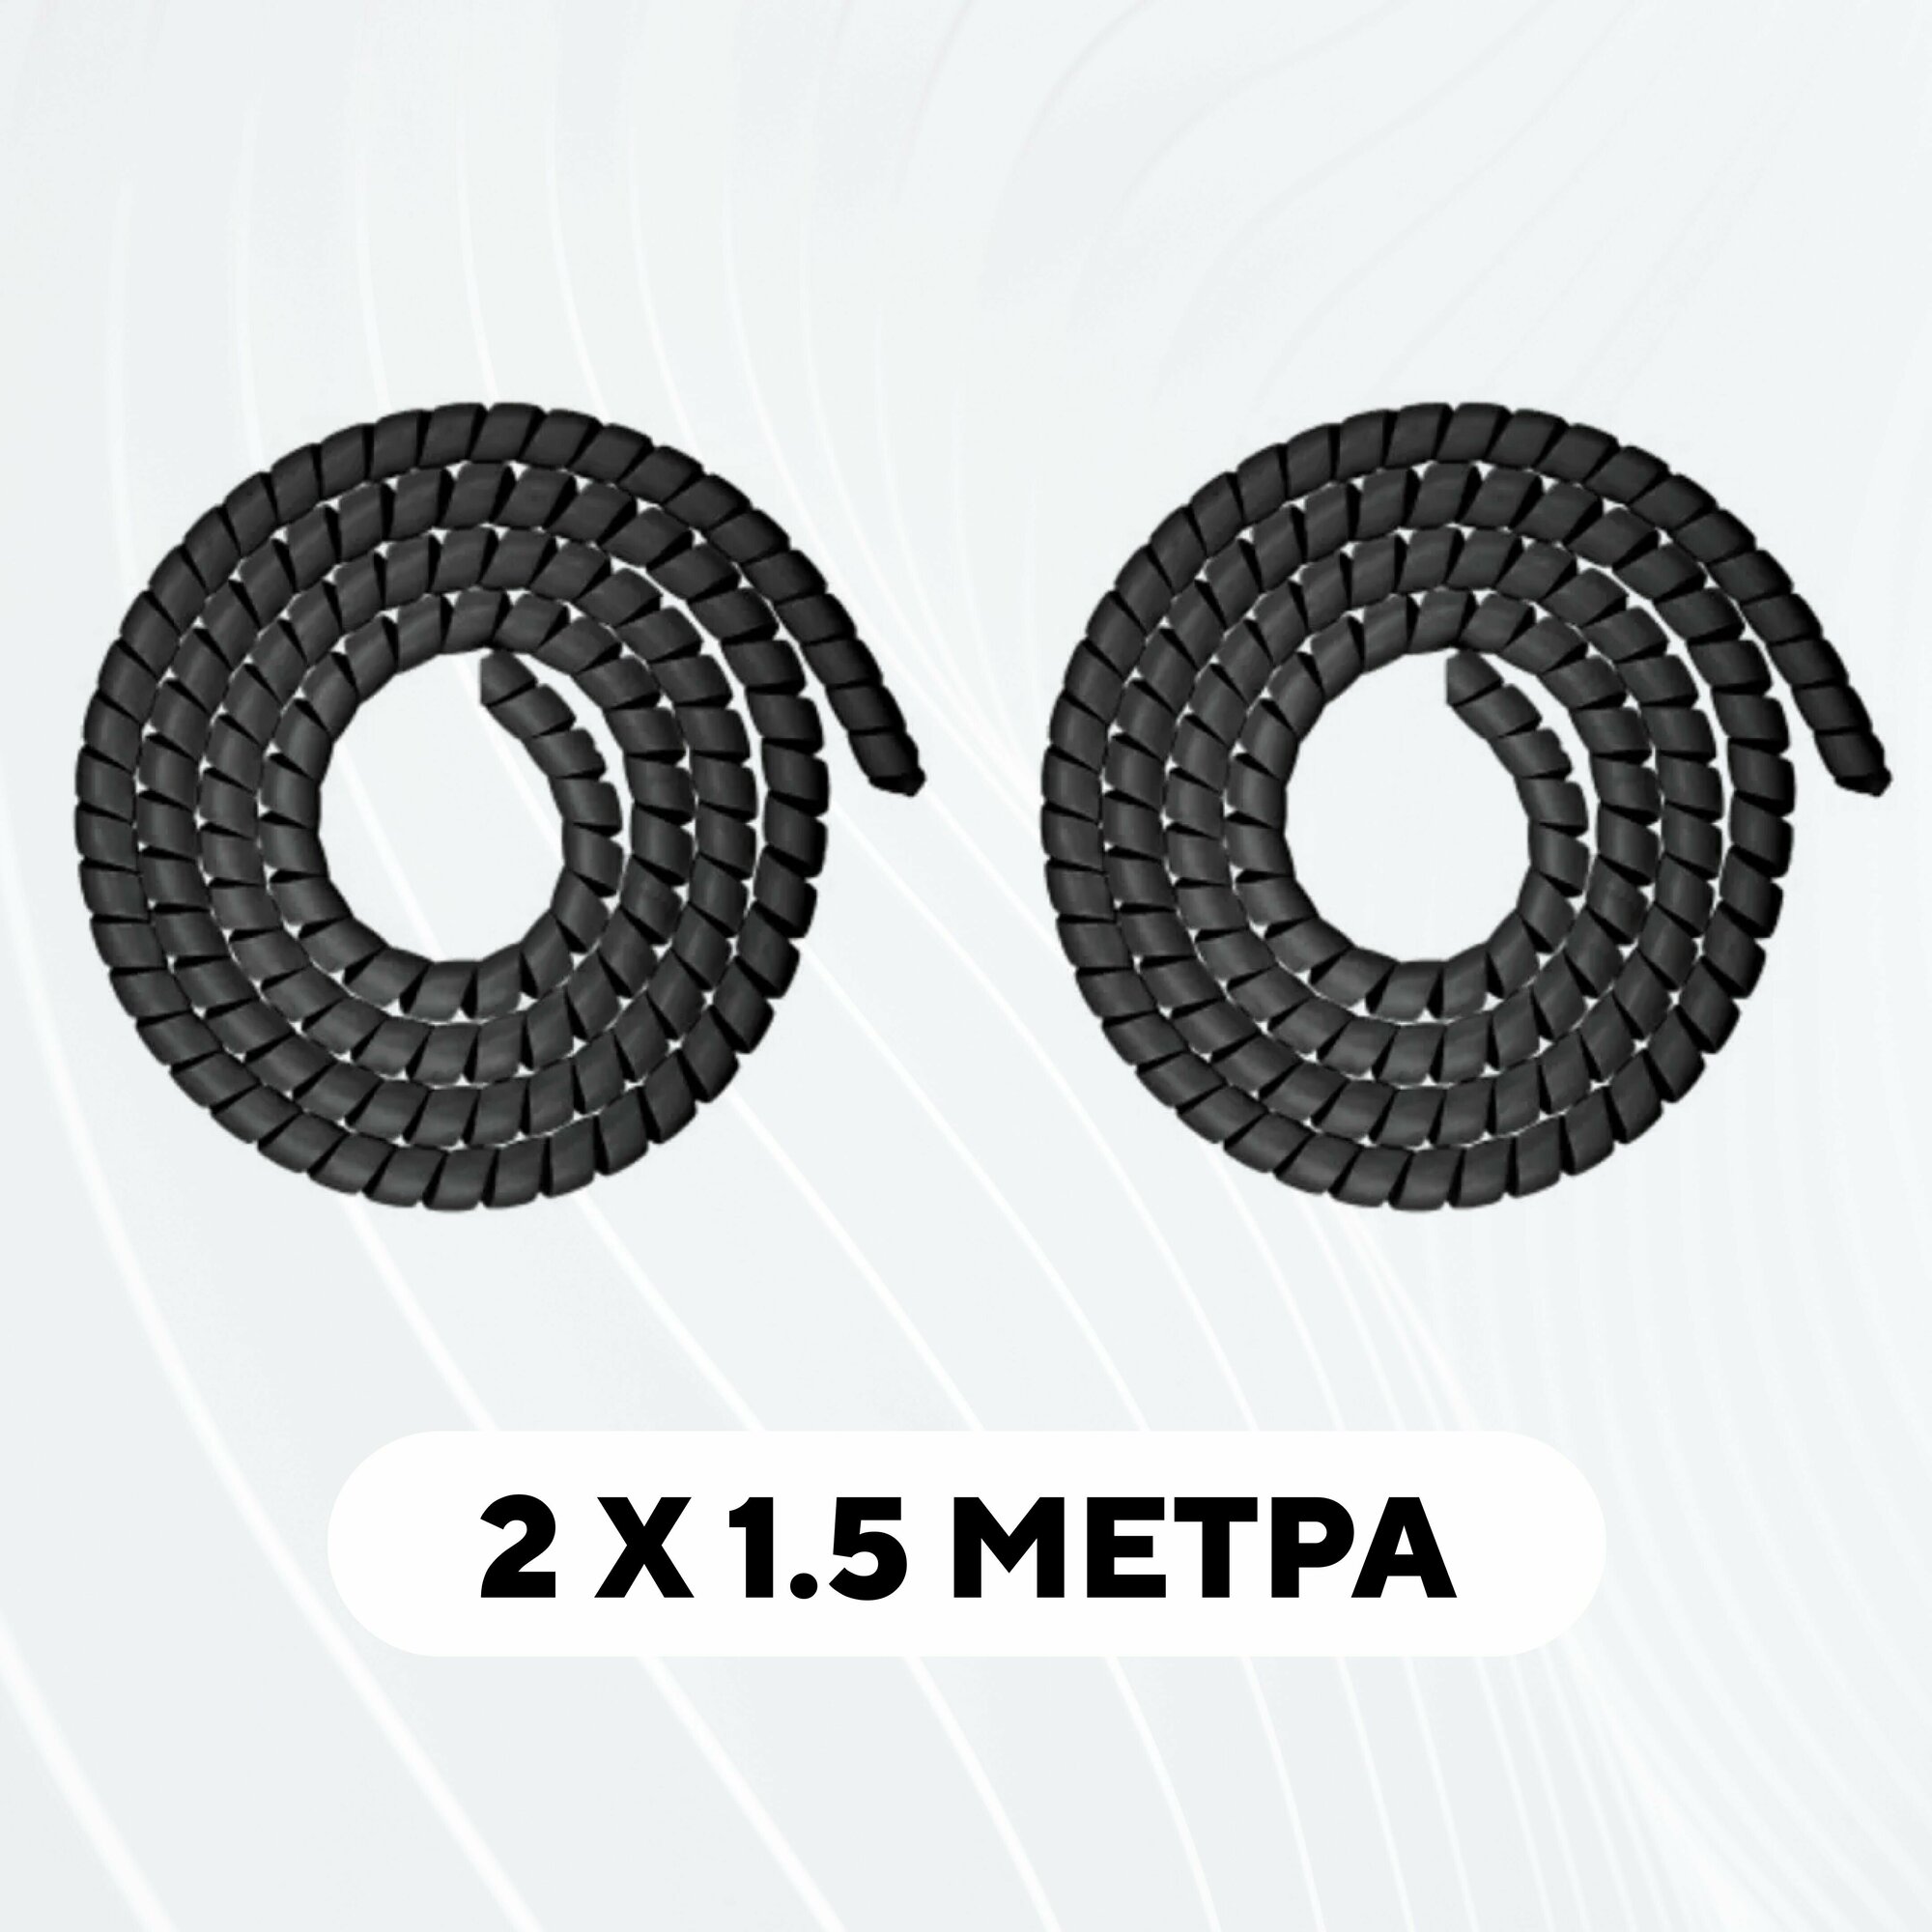 Спиральная обмотка проводки оплетка для проводов (серый комплект 2 шт. по 1.5 метра)